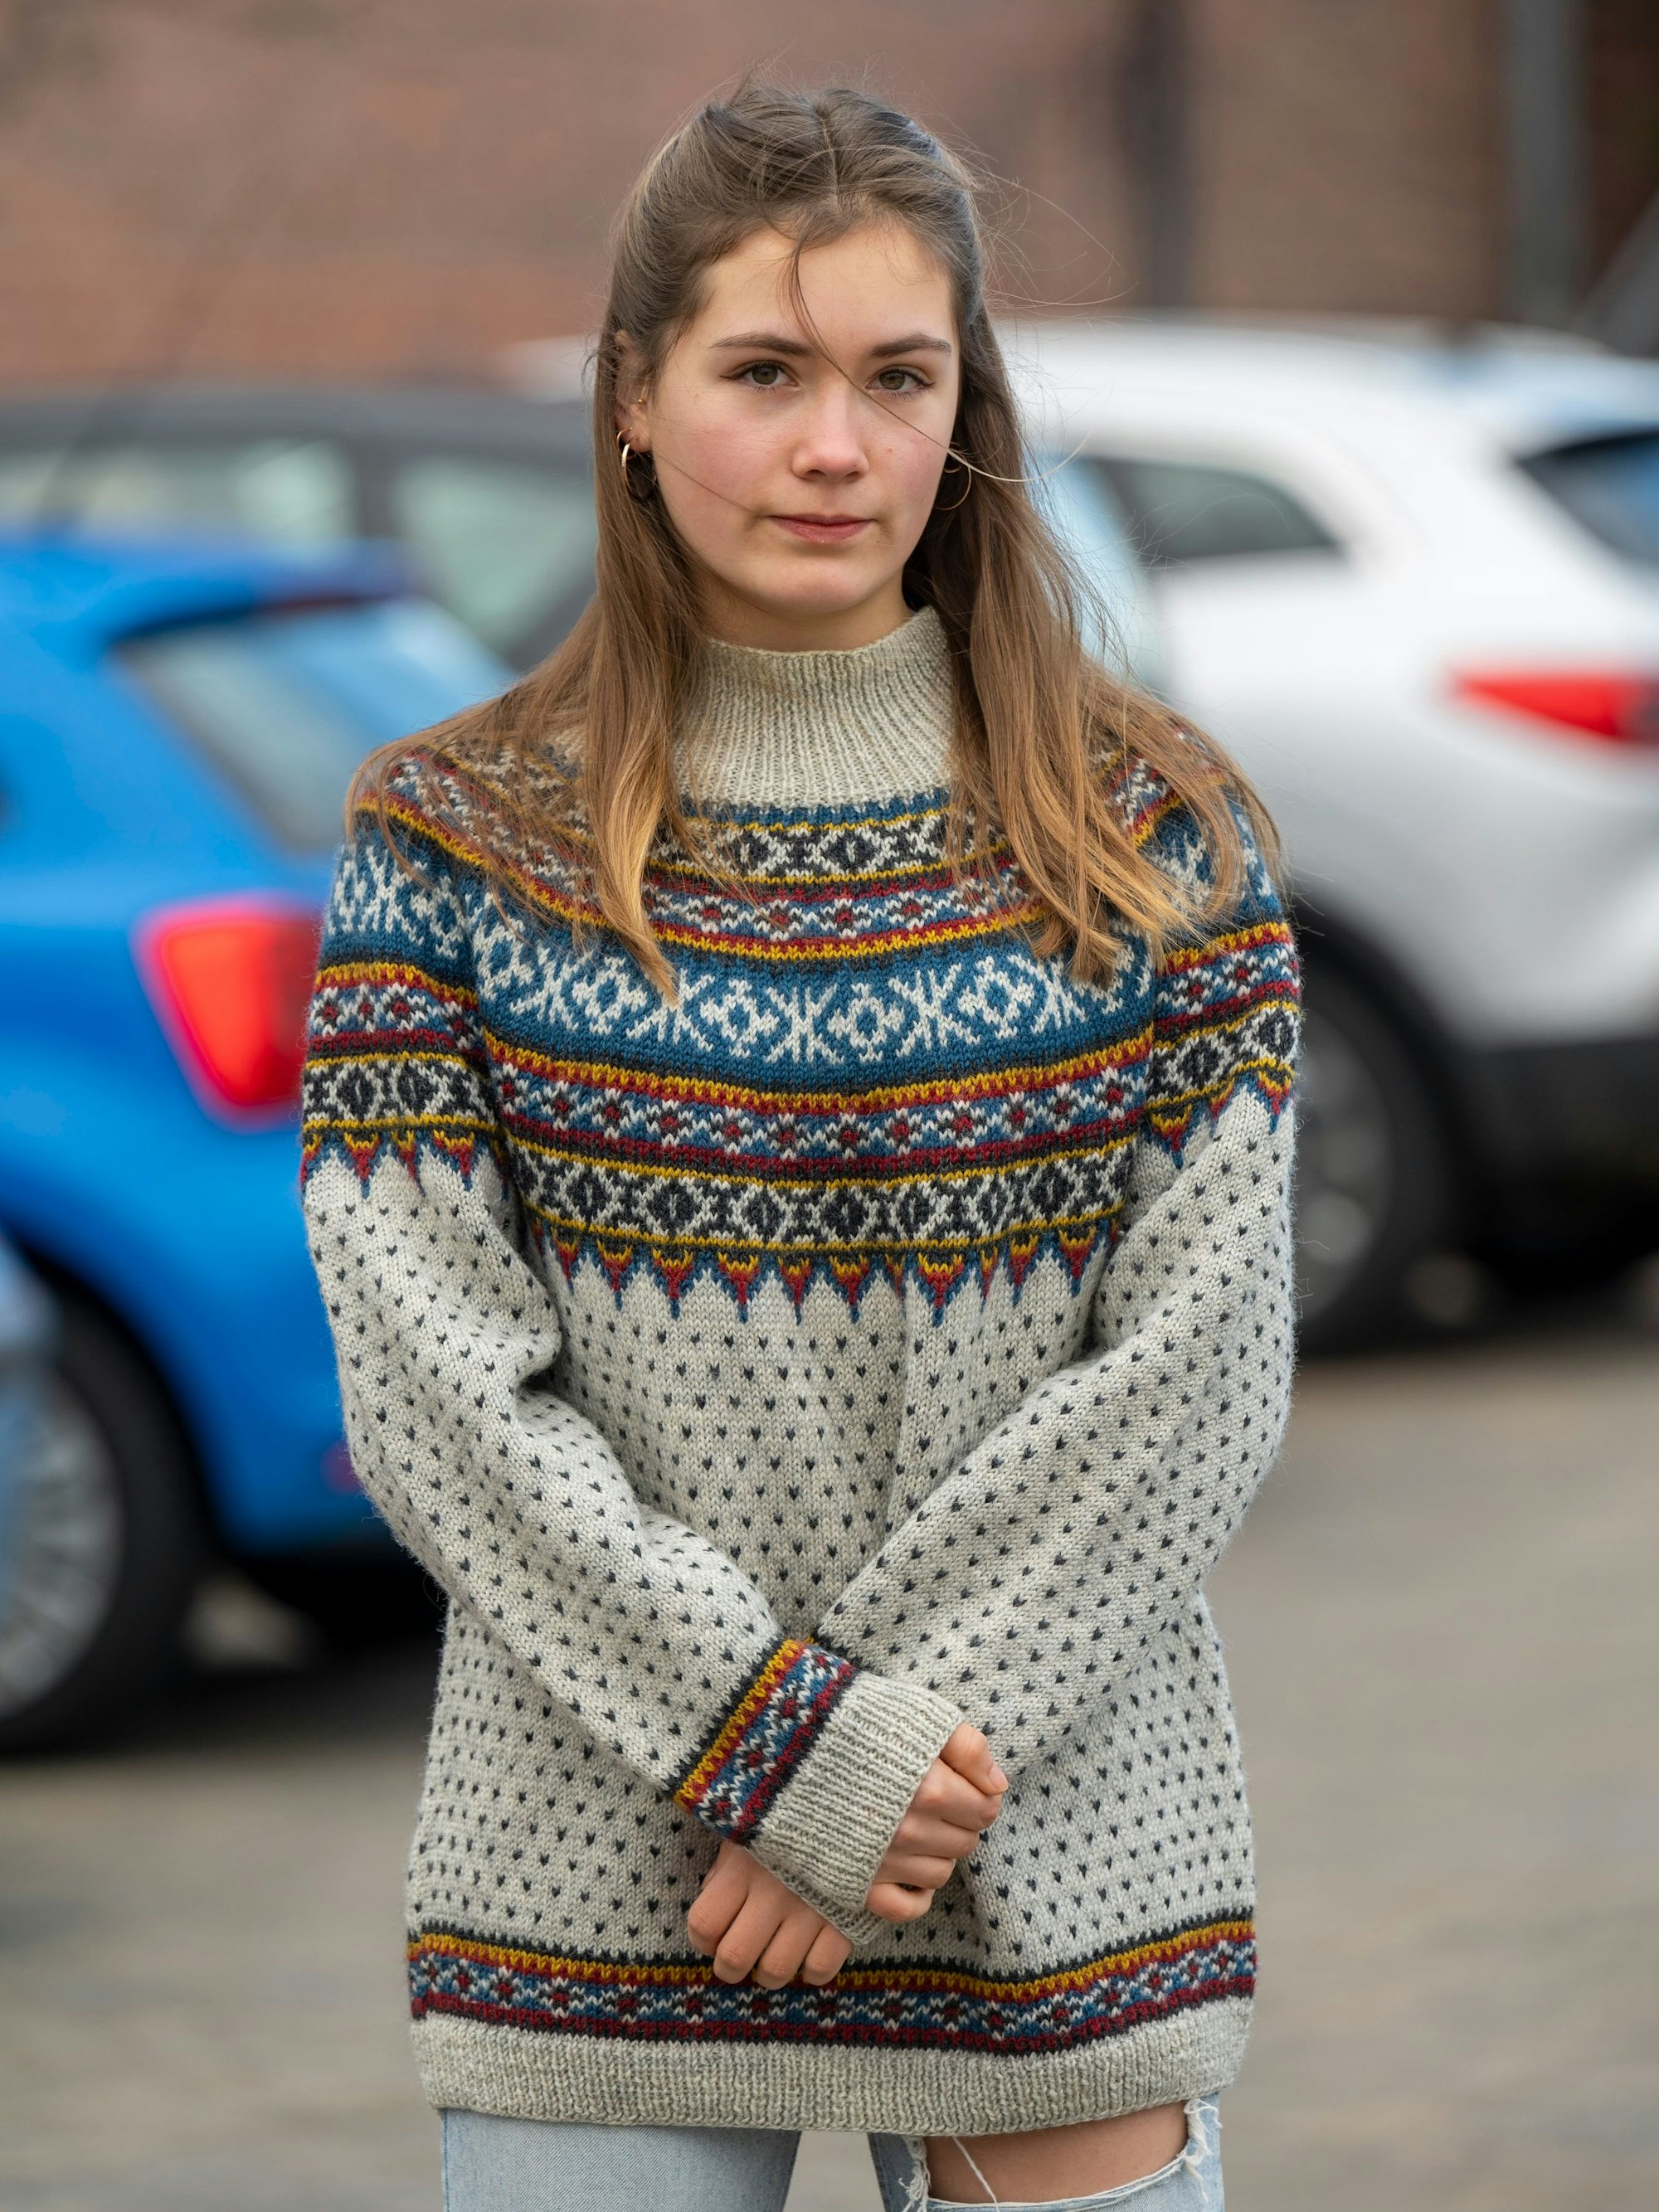 Die 17-jährige Marla Heyer ist Aktivistin der „Letzten Generation“. Sie steht auf einem Parkplatz und schaut in die Kamera.